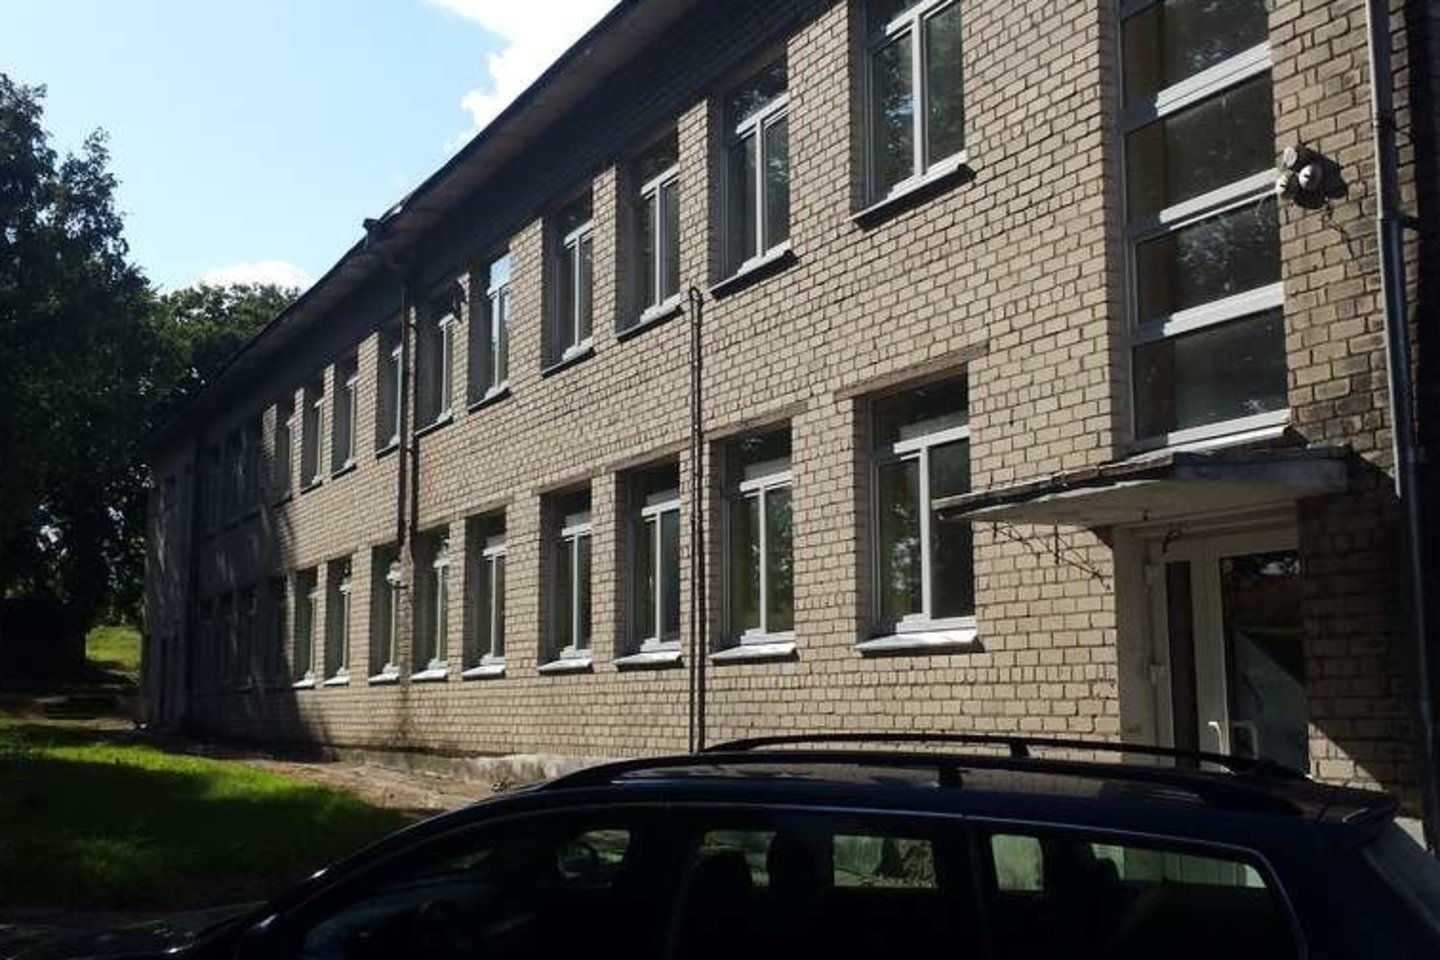 Skelbimų portale pasirodė skelbimas, jog parduodamas dviejų aukstų 662 kv. m ploto mokyklos pastatas.<br>Skaitytojos Danutės nuotr.